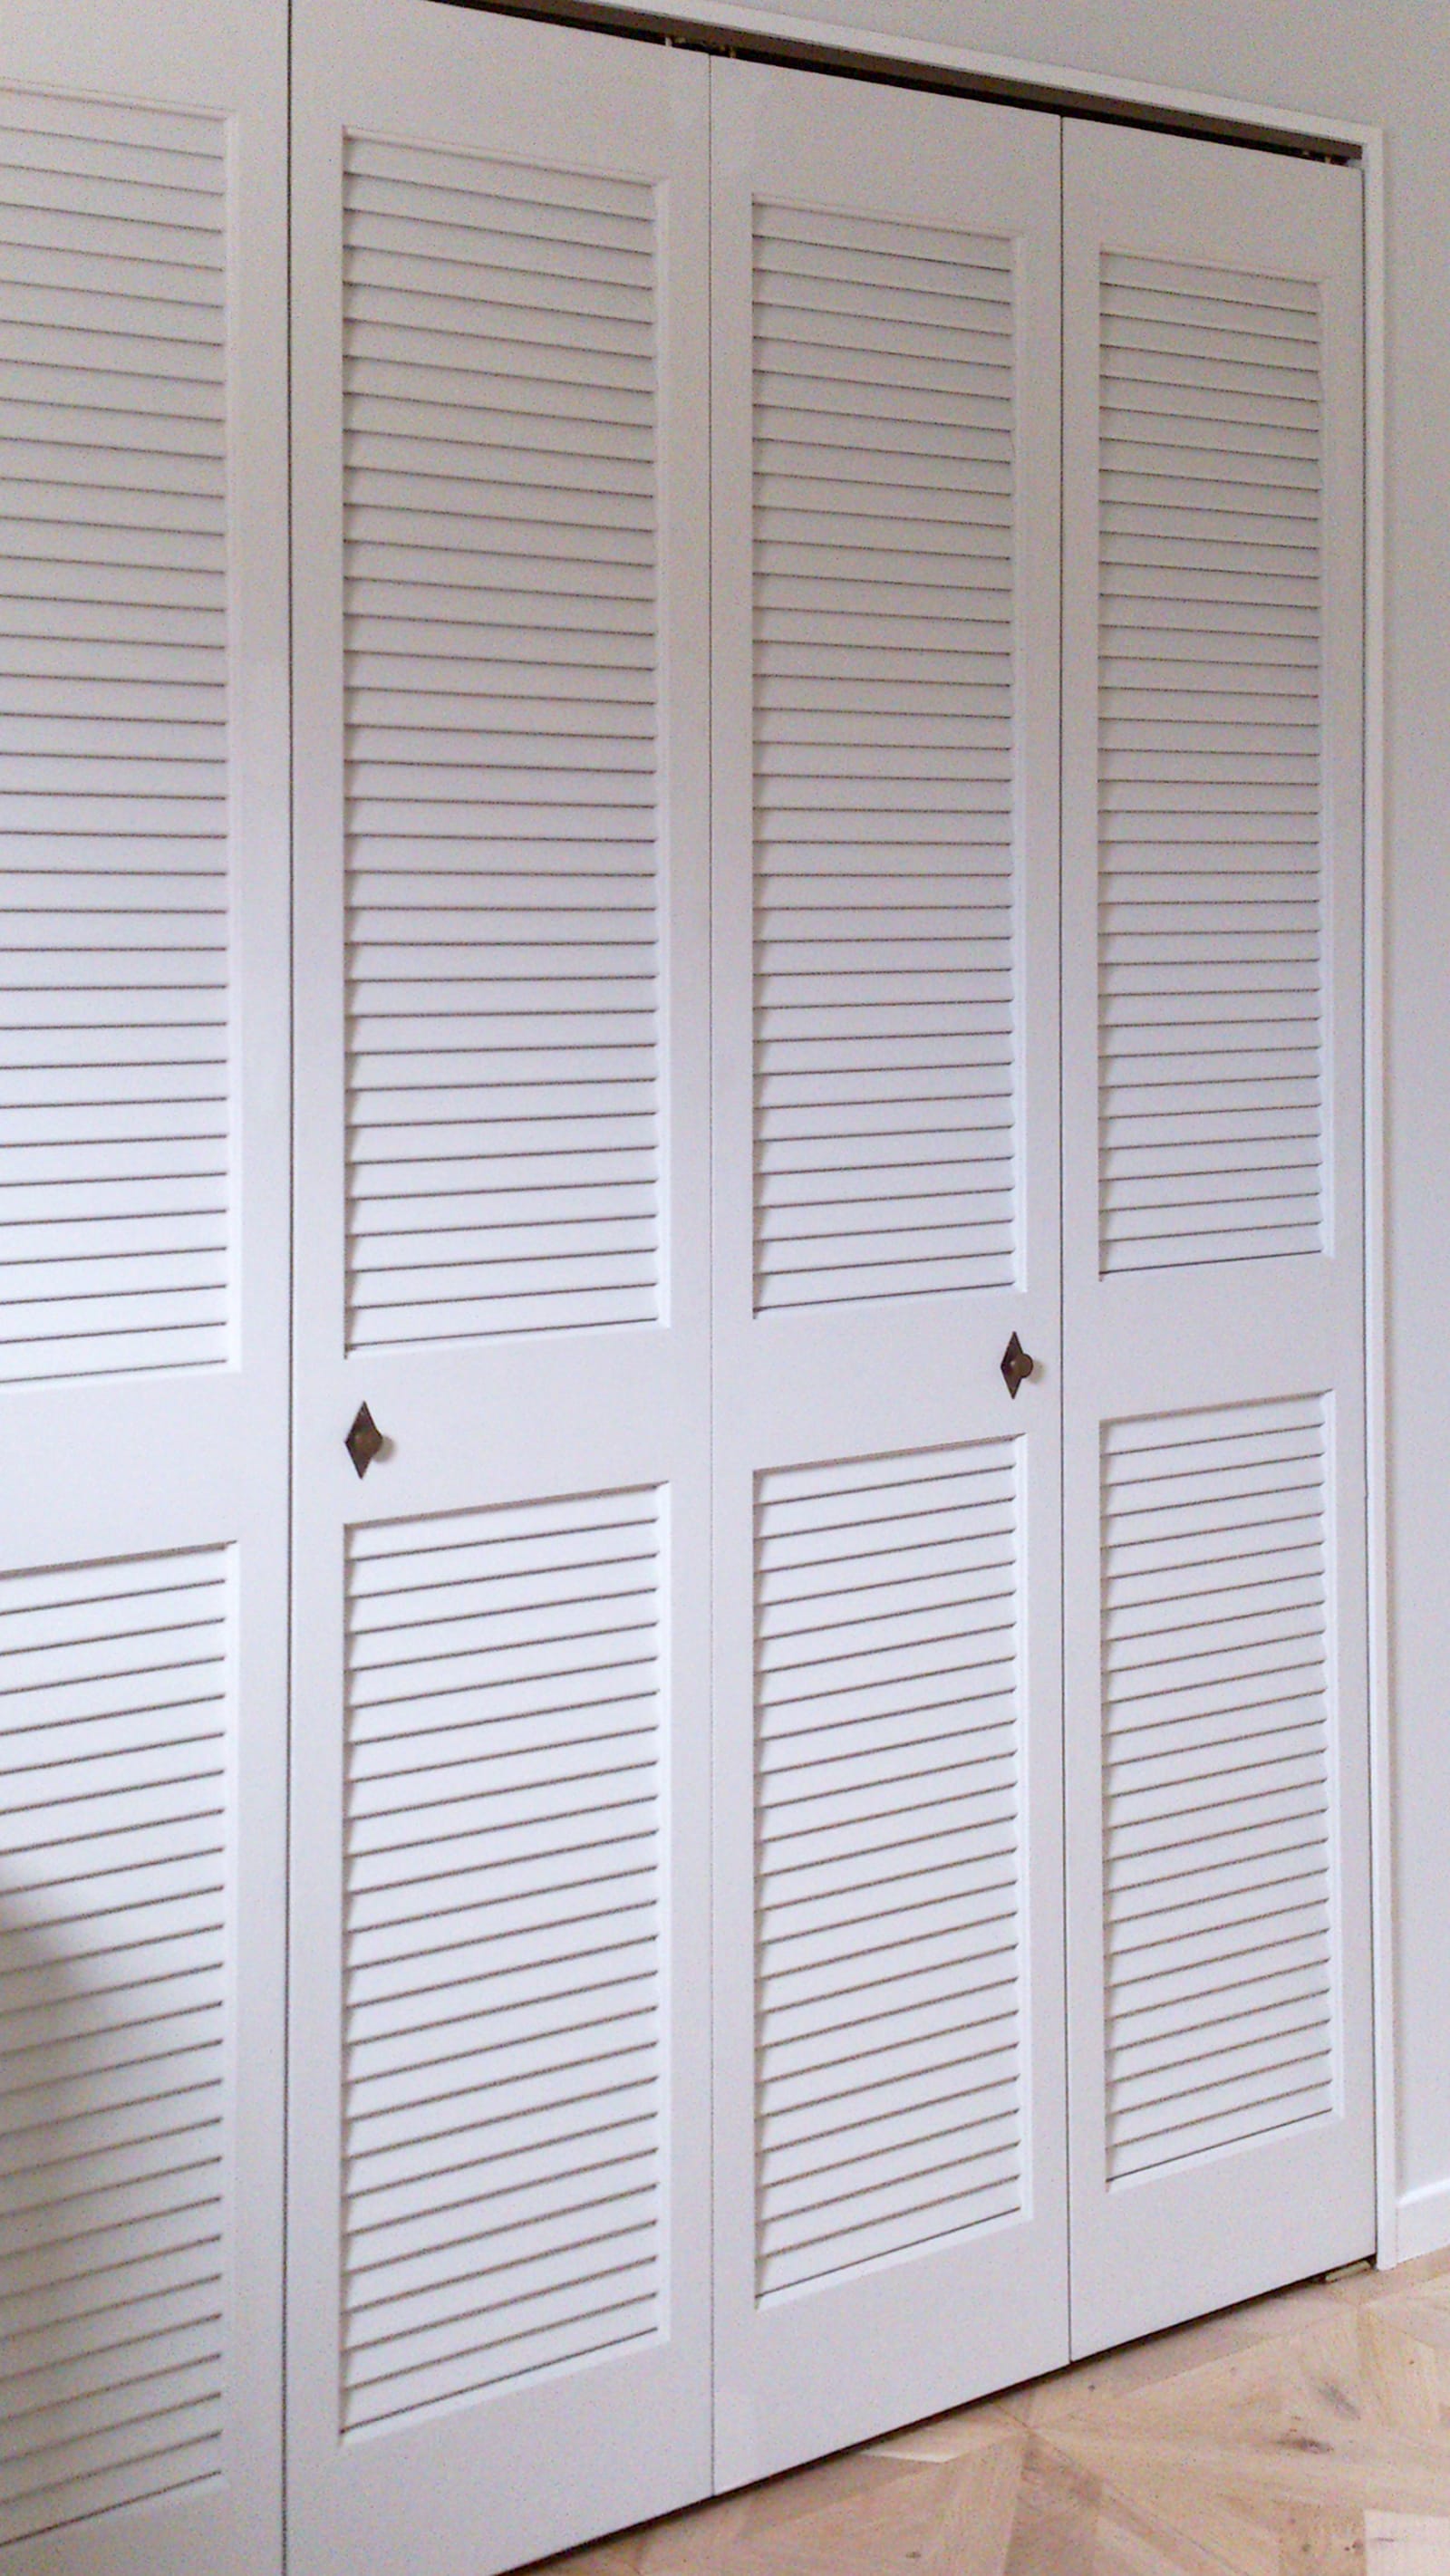 木製パインルーバー折れ戸 両開き 1509×2007 DW-DR011-04-G111 ペンキで塗るとまた雰囲気が変わります（写真の付属品は旧仕様）（写真は両開き 1509×2007）